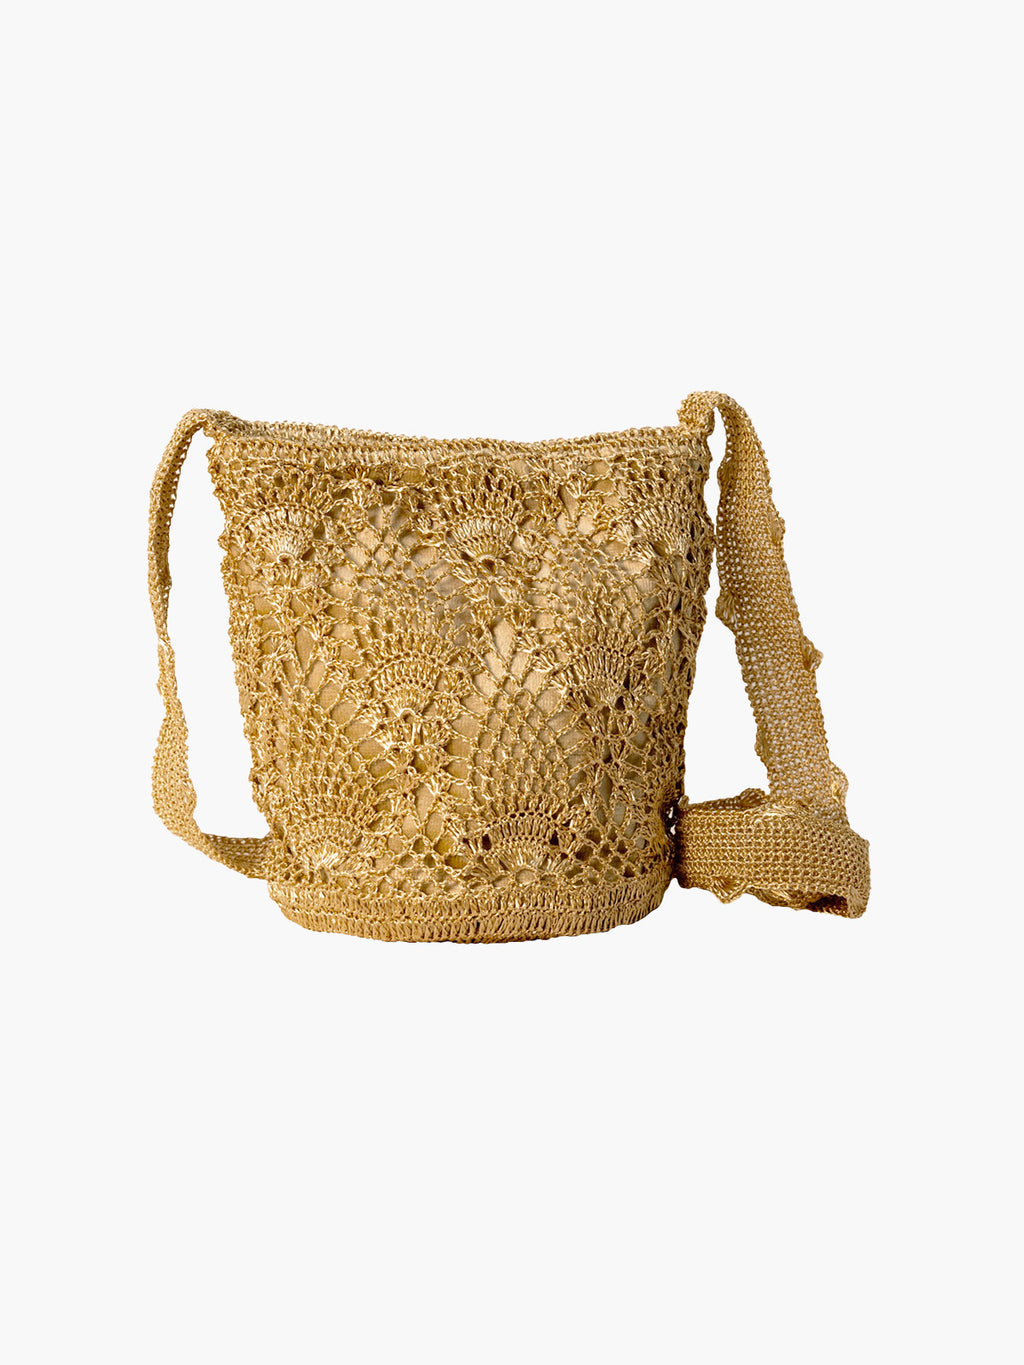 Pineapple Weave Mochila | Gold & Beige - Fashionkind